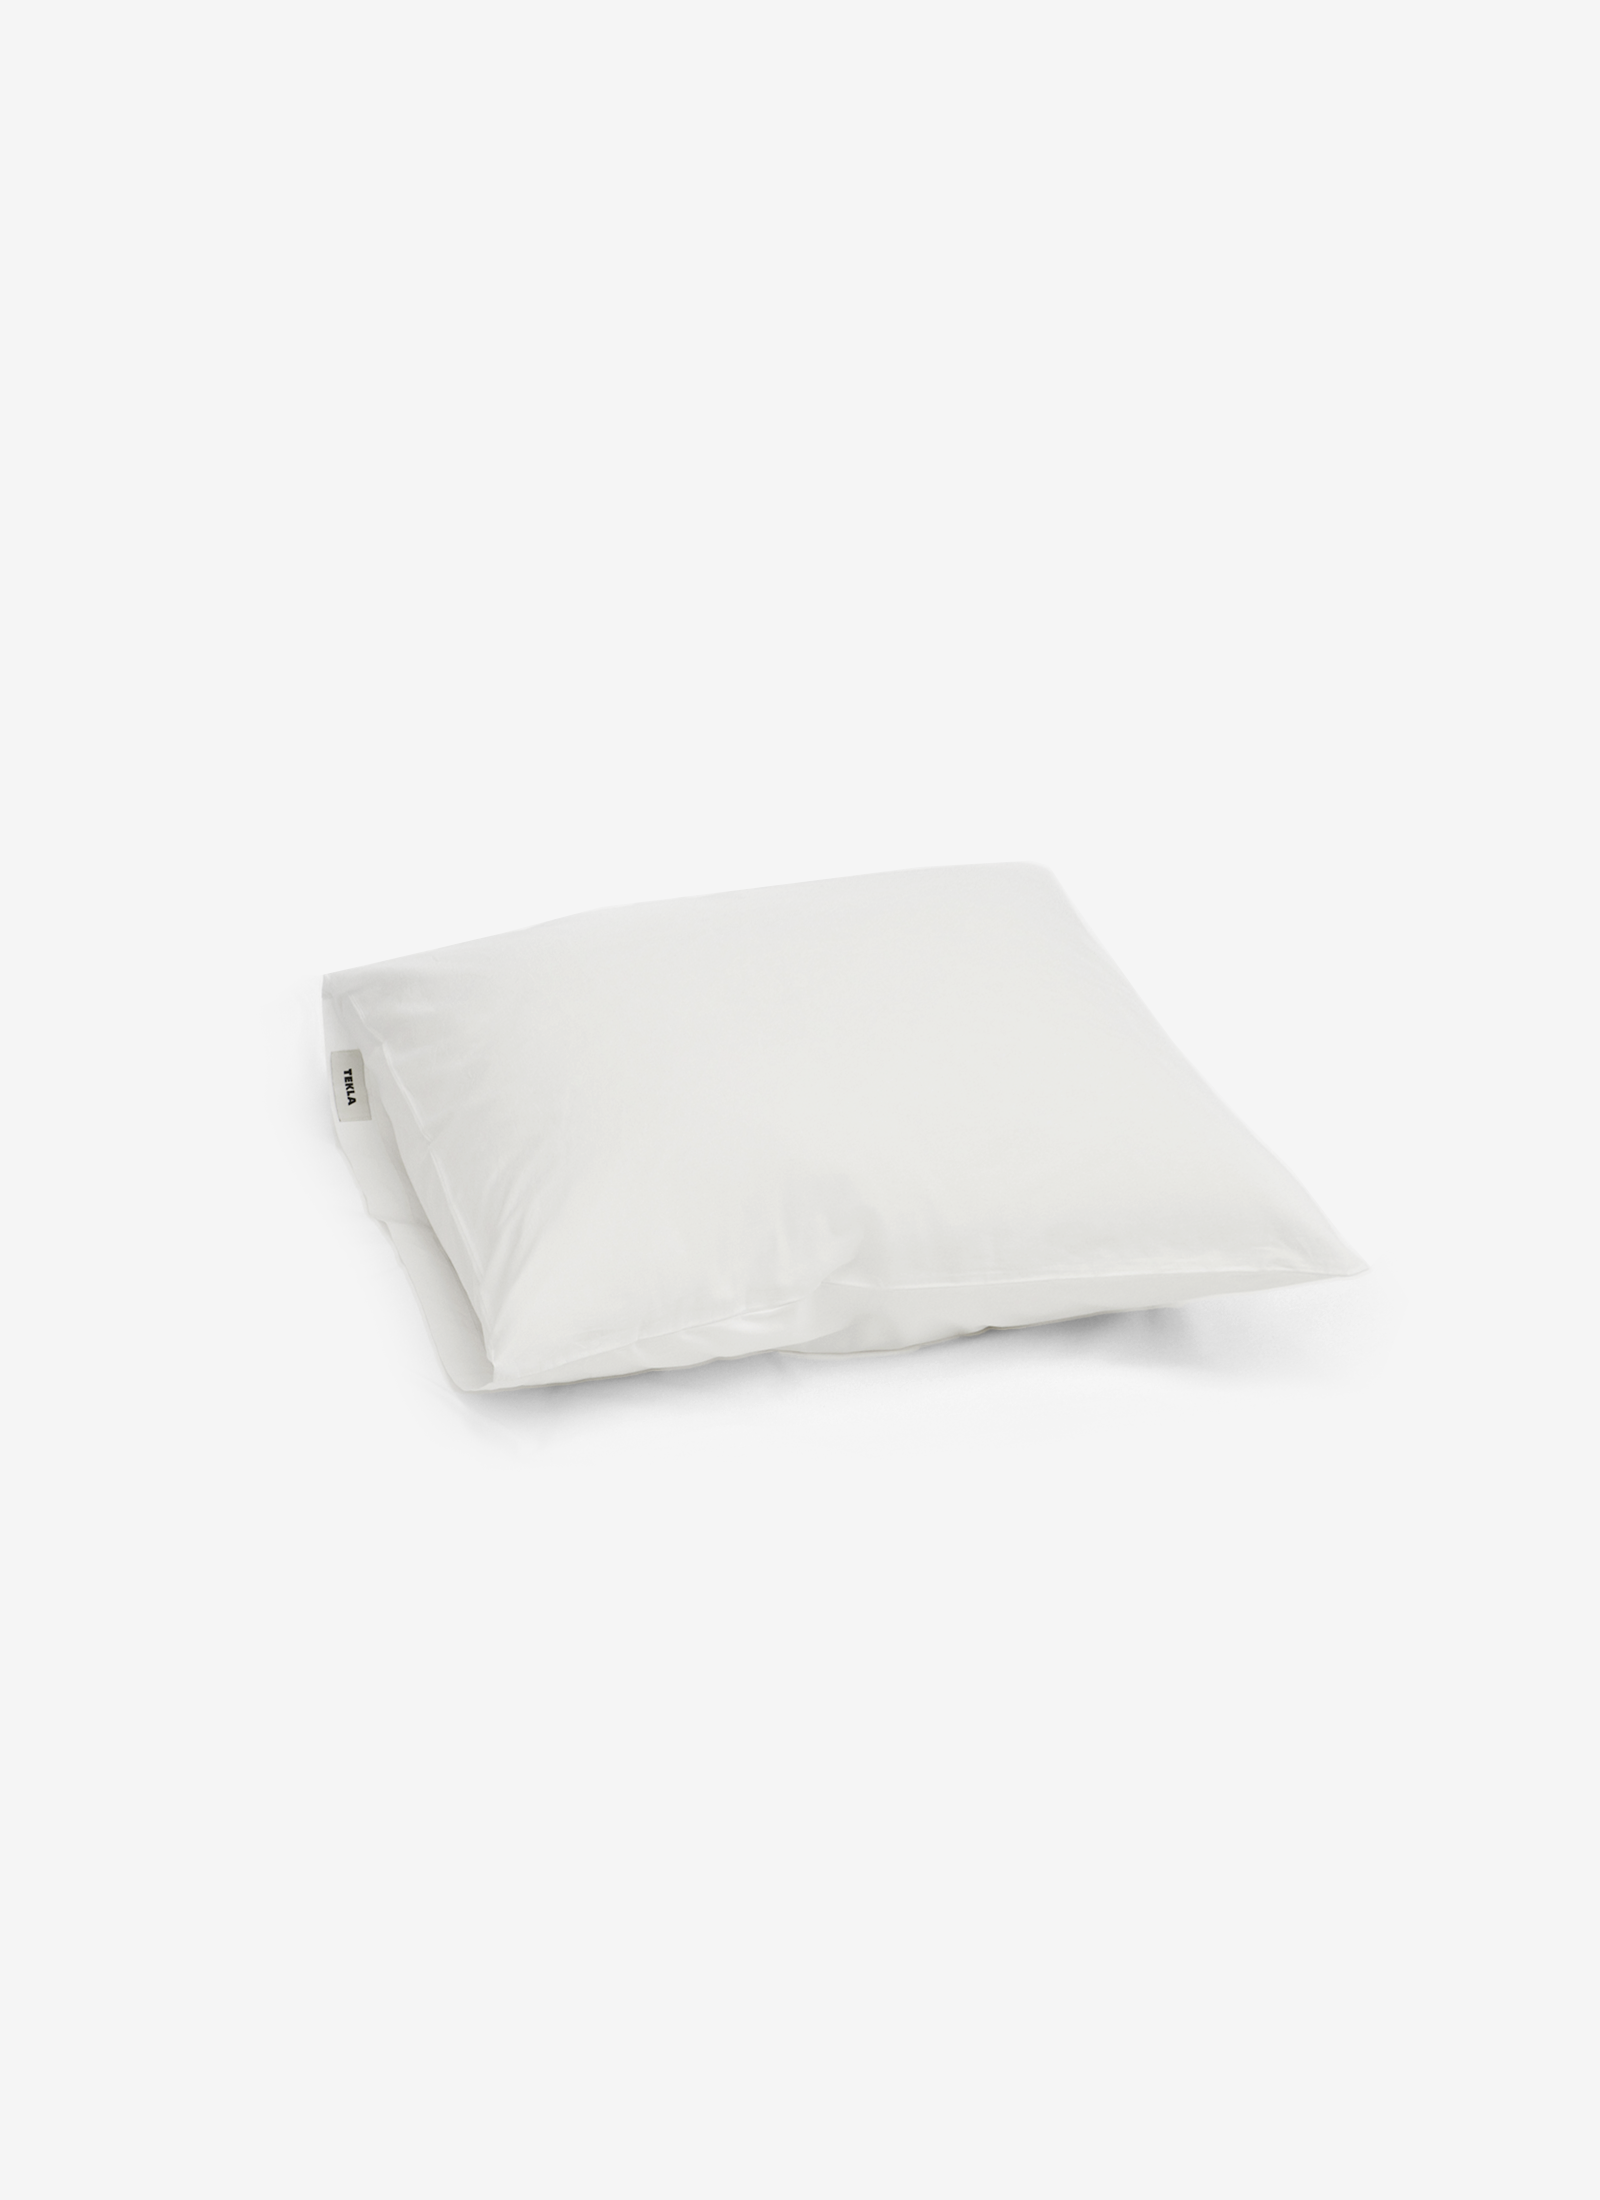 Pillowcases in Broken White - Pair